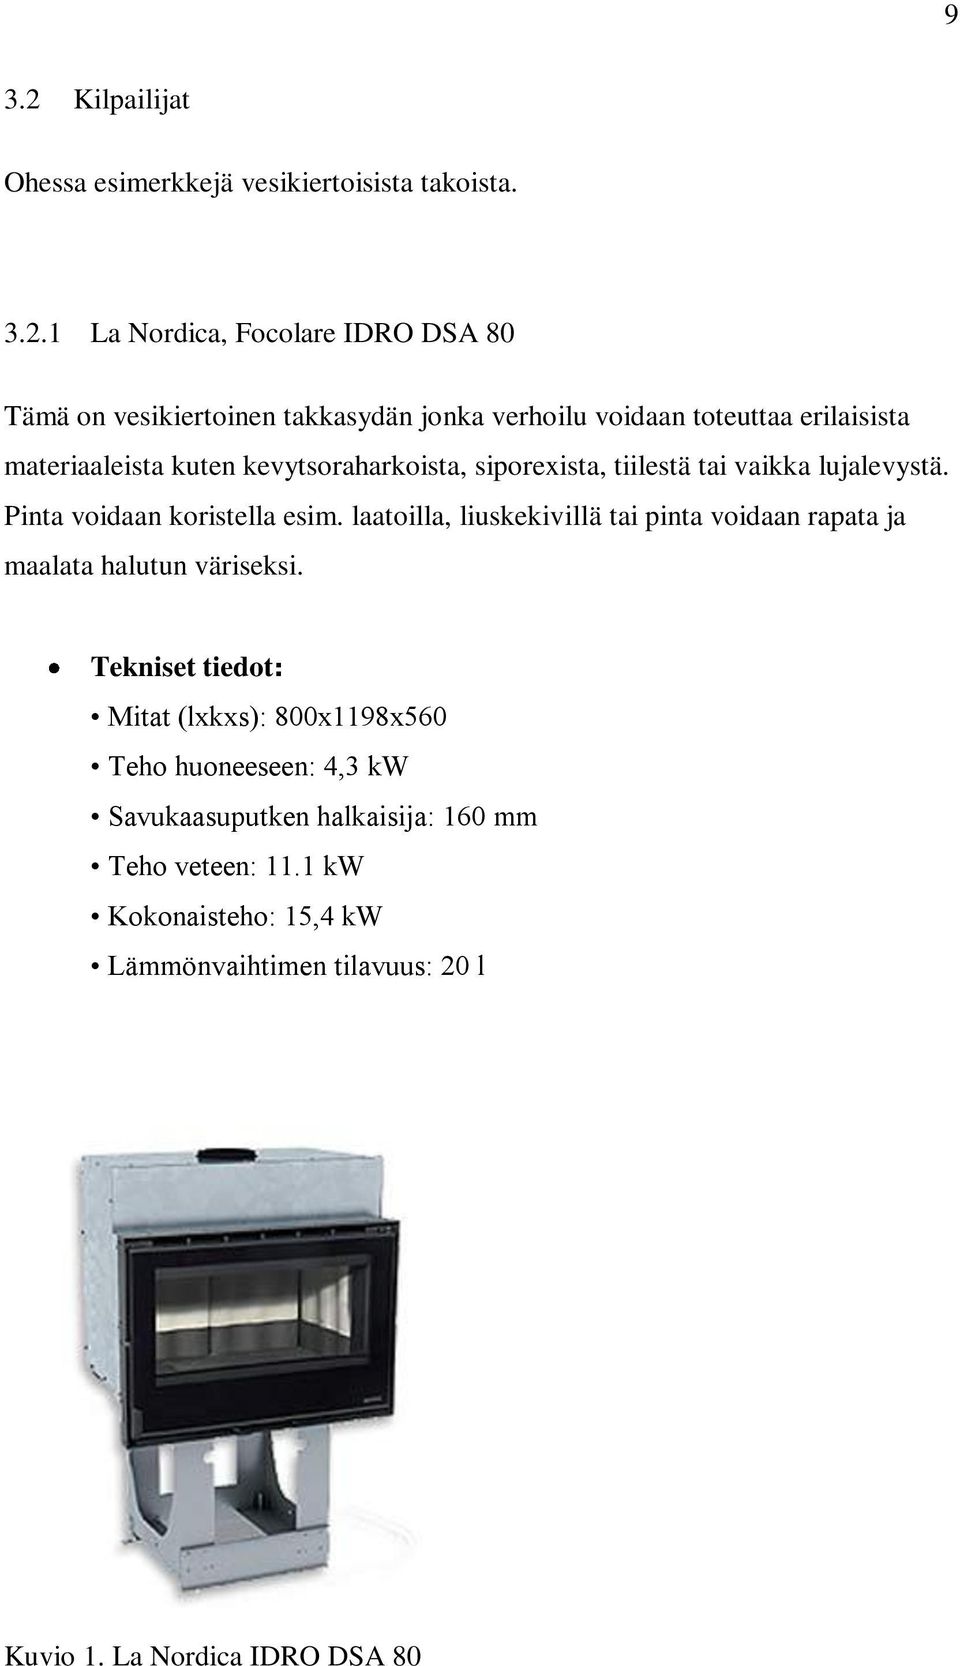 1 La Nordica, Focolare IDRO DSA 80 Tämä on vesikiertoinen takkasydän jonka verhoilu voidaan toteuttaa erilaisista materiaaleista kuten